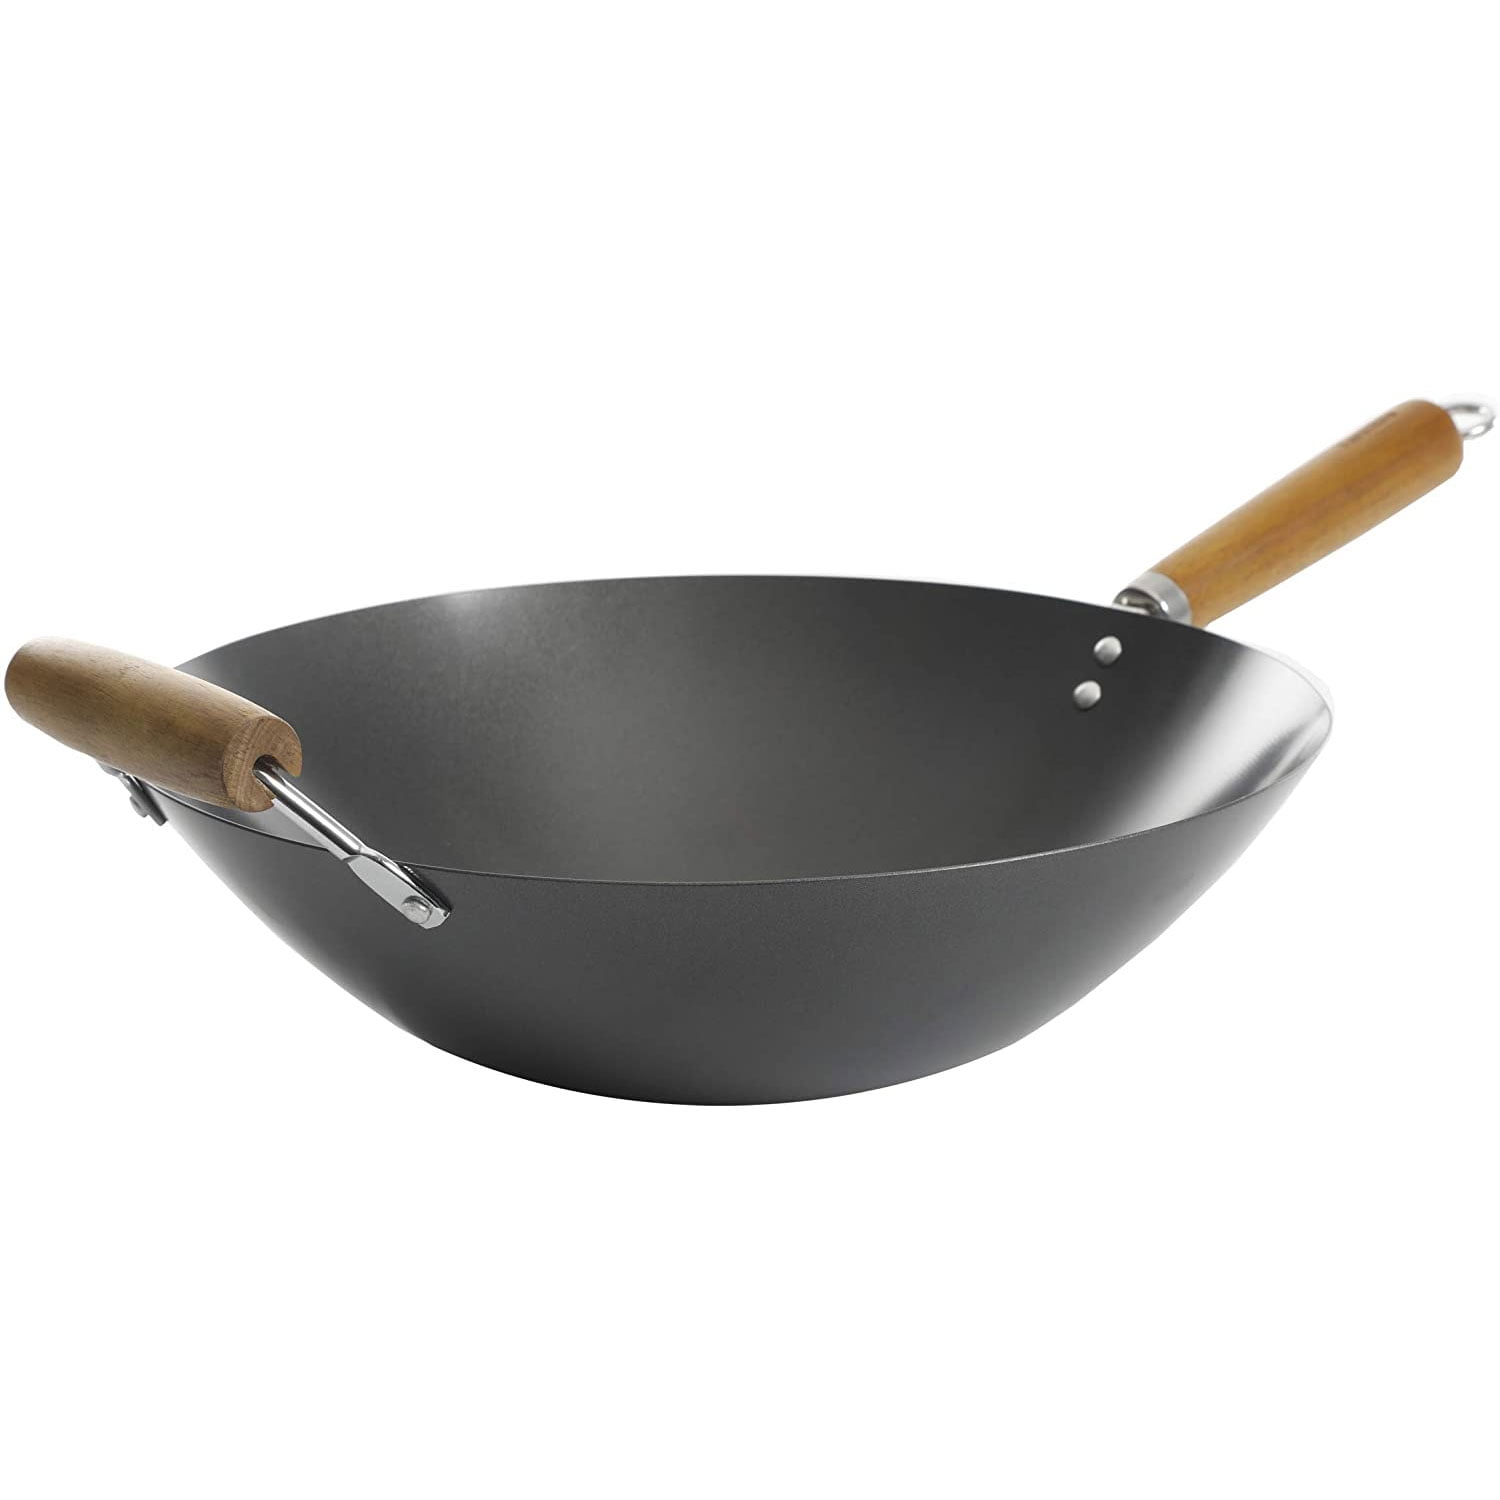 Nonstick Wok Frying Pan Set 2 Piece Cooking Wooden Handles Durable Carbon Steel 